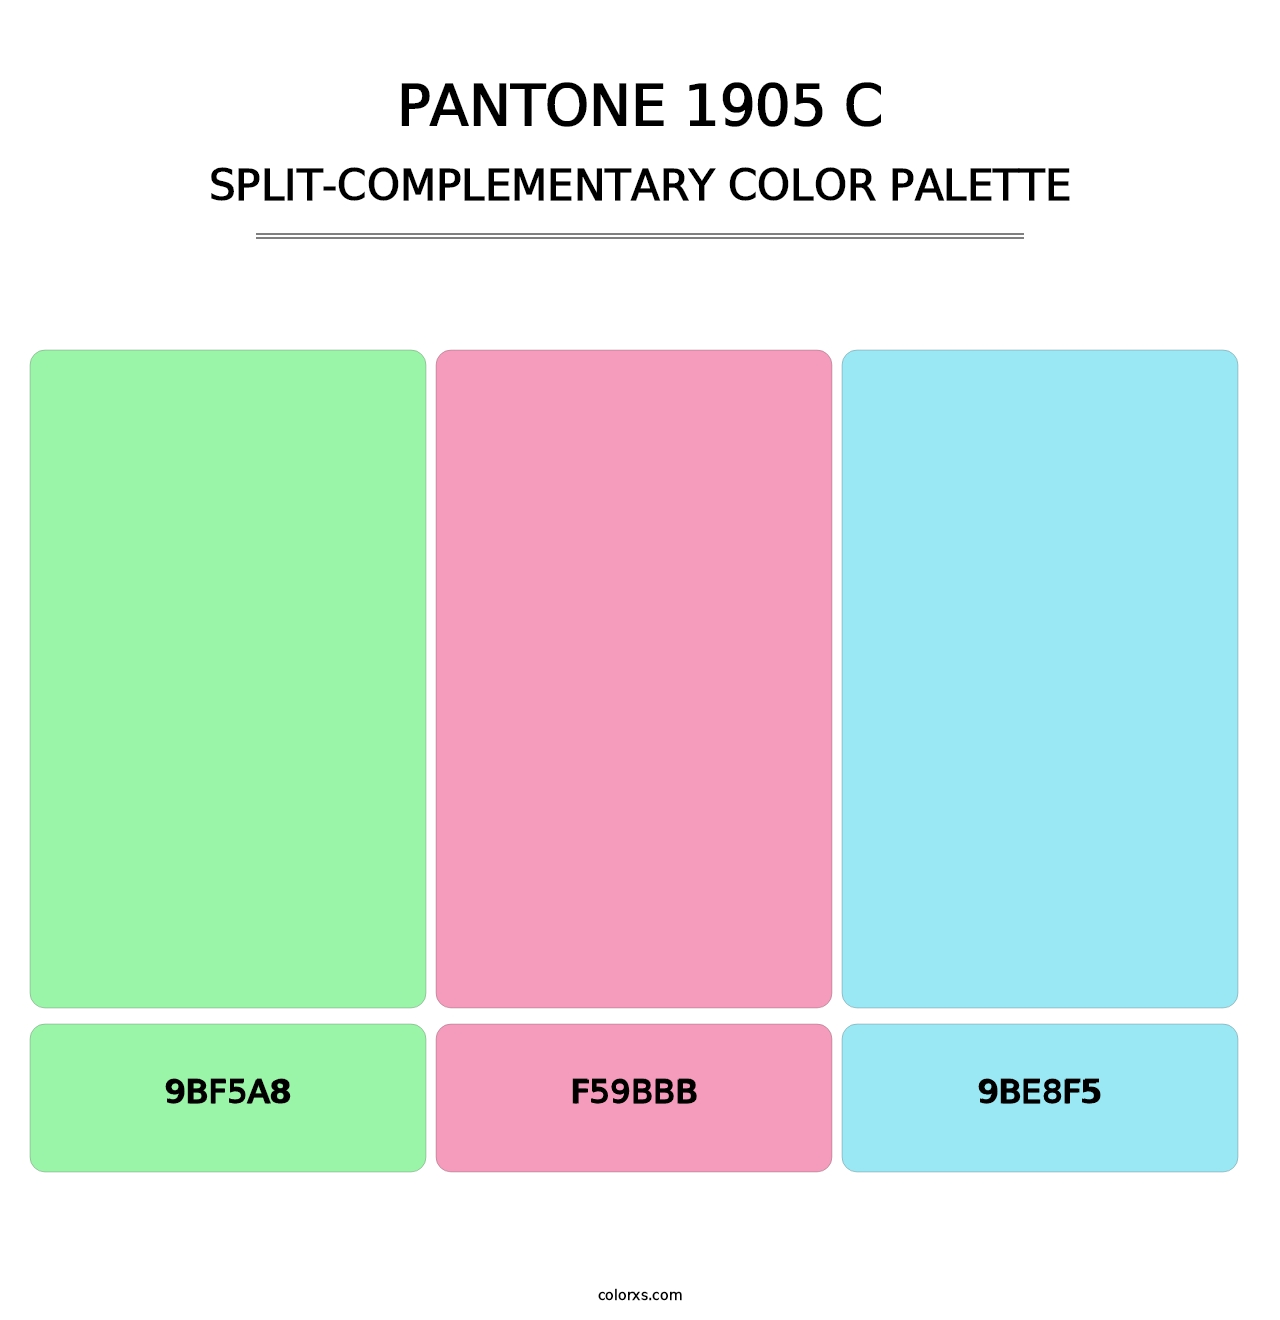 PANTONE 1905 C - Split-Complementary Color Palette